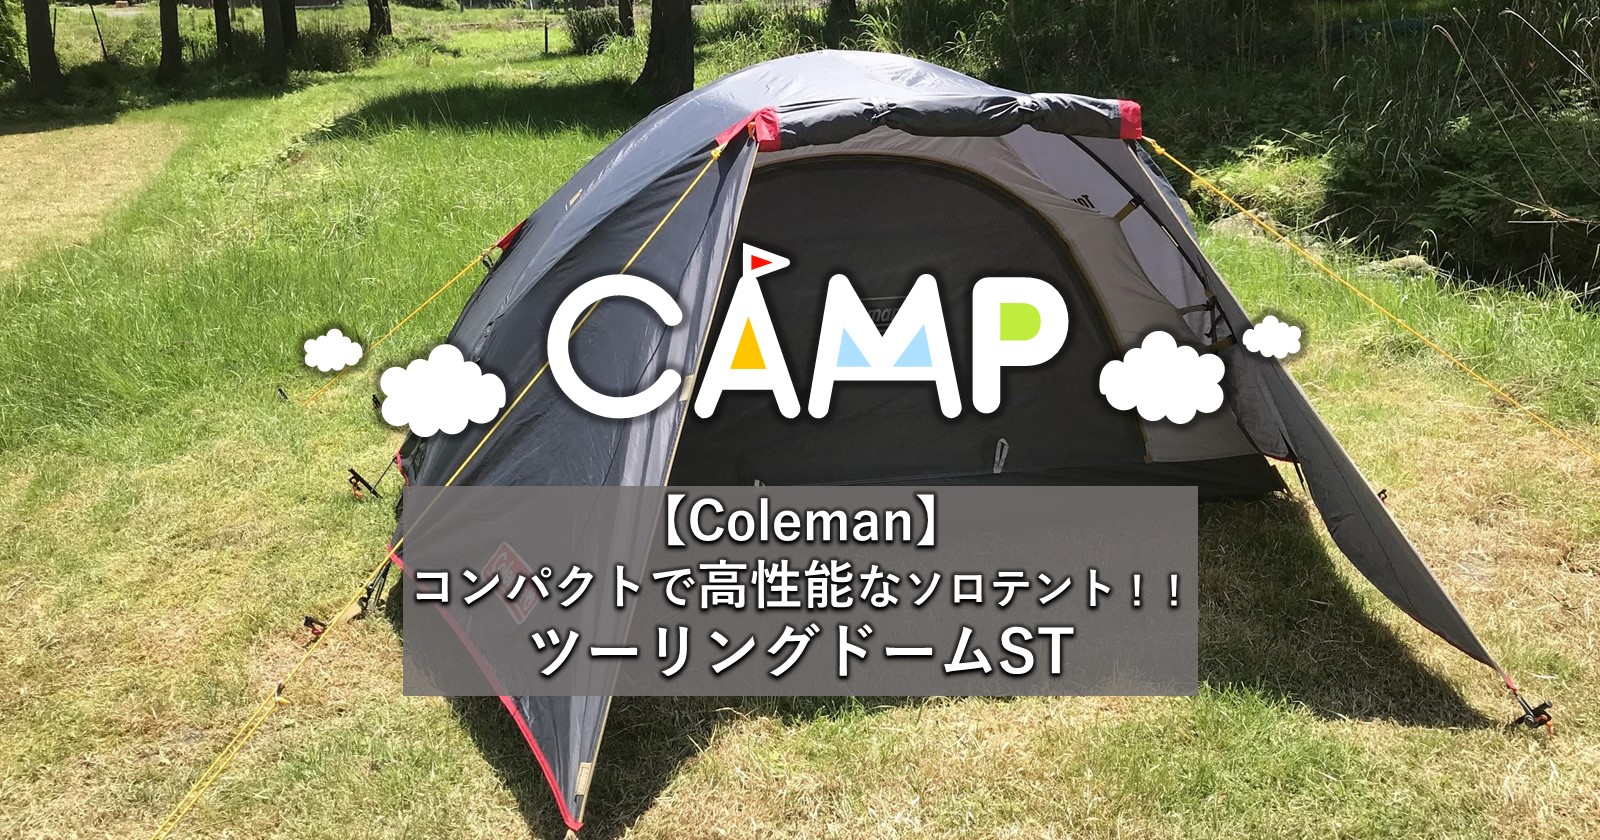 アウトドア テント/タープ 【Coleman】 コンパクトで高性能 最強のソロテント‼ツーリング 